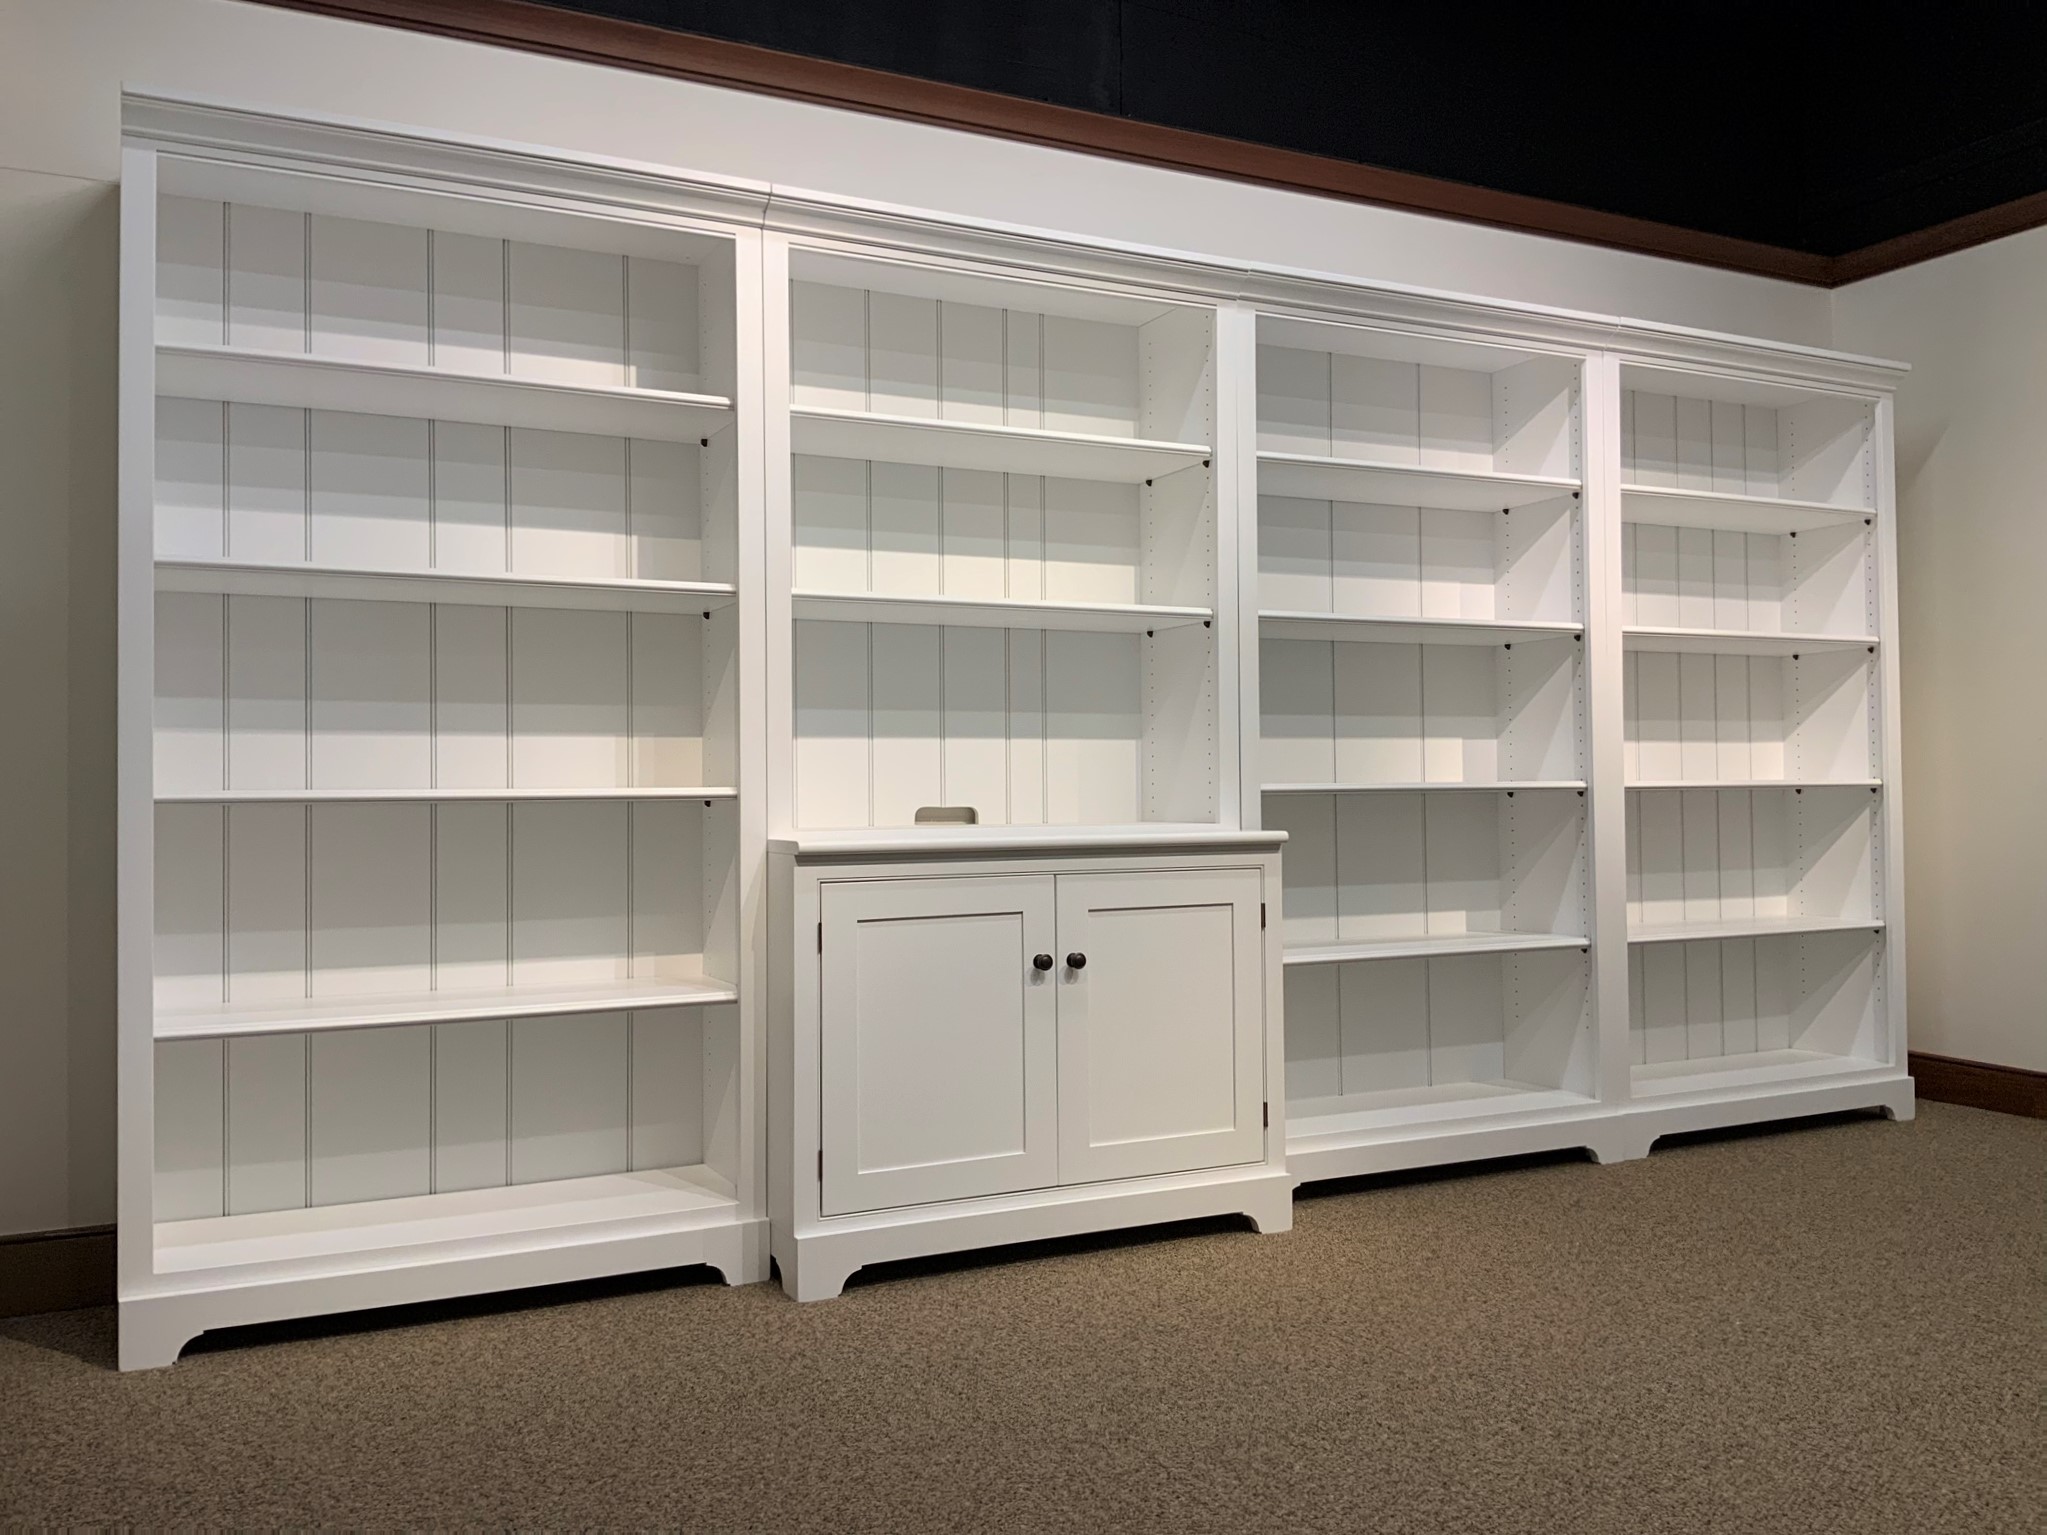 large bookshelf units